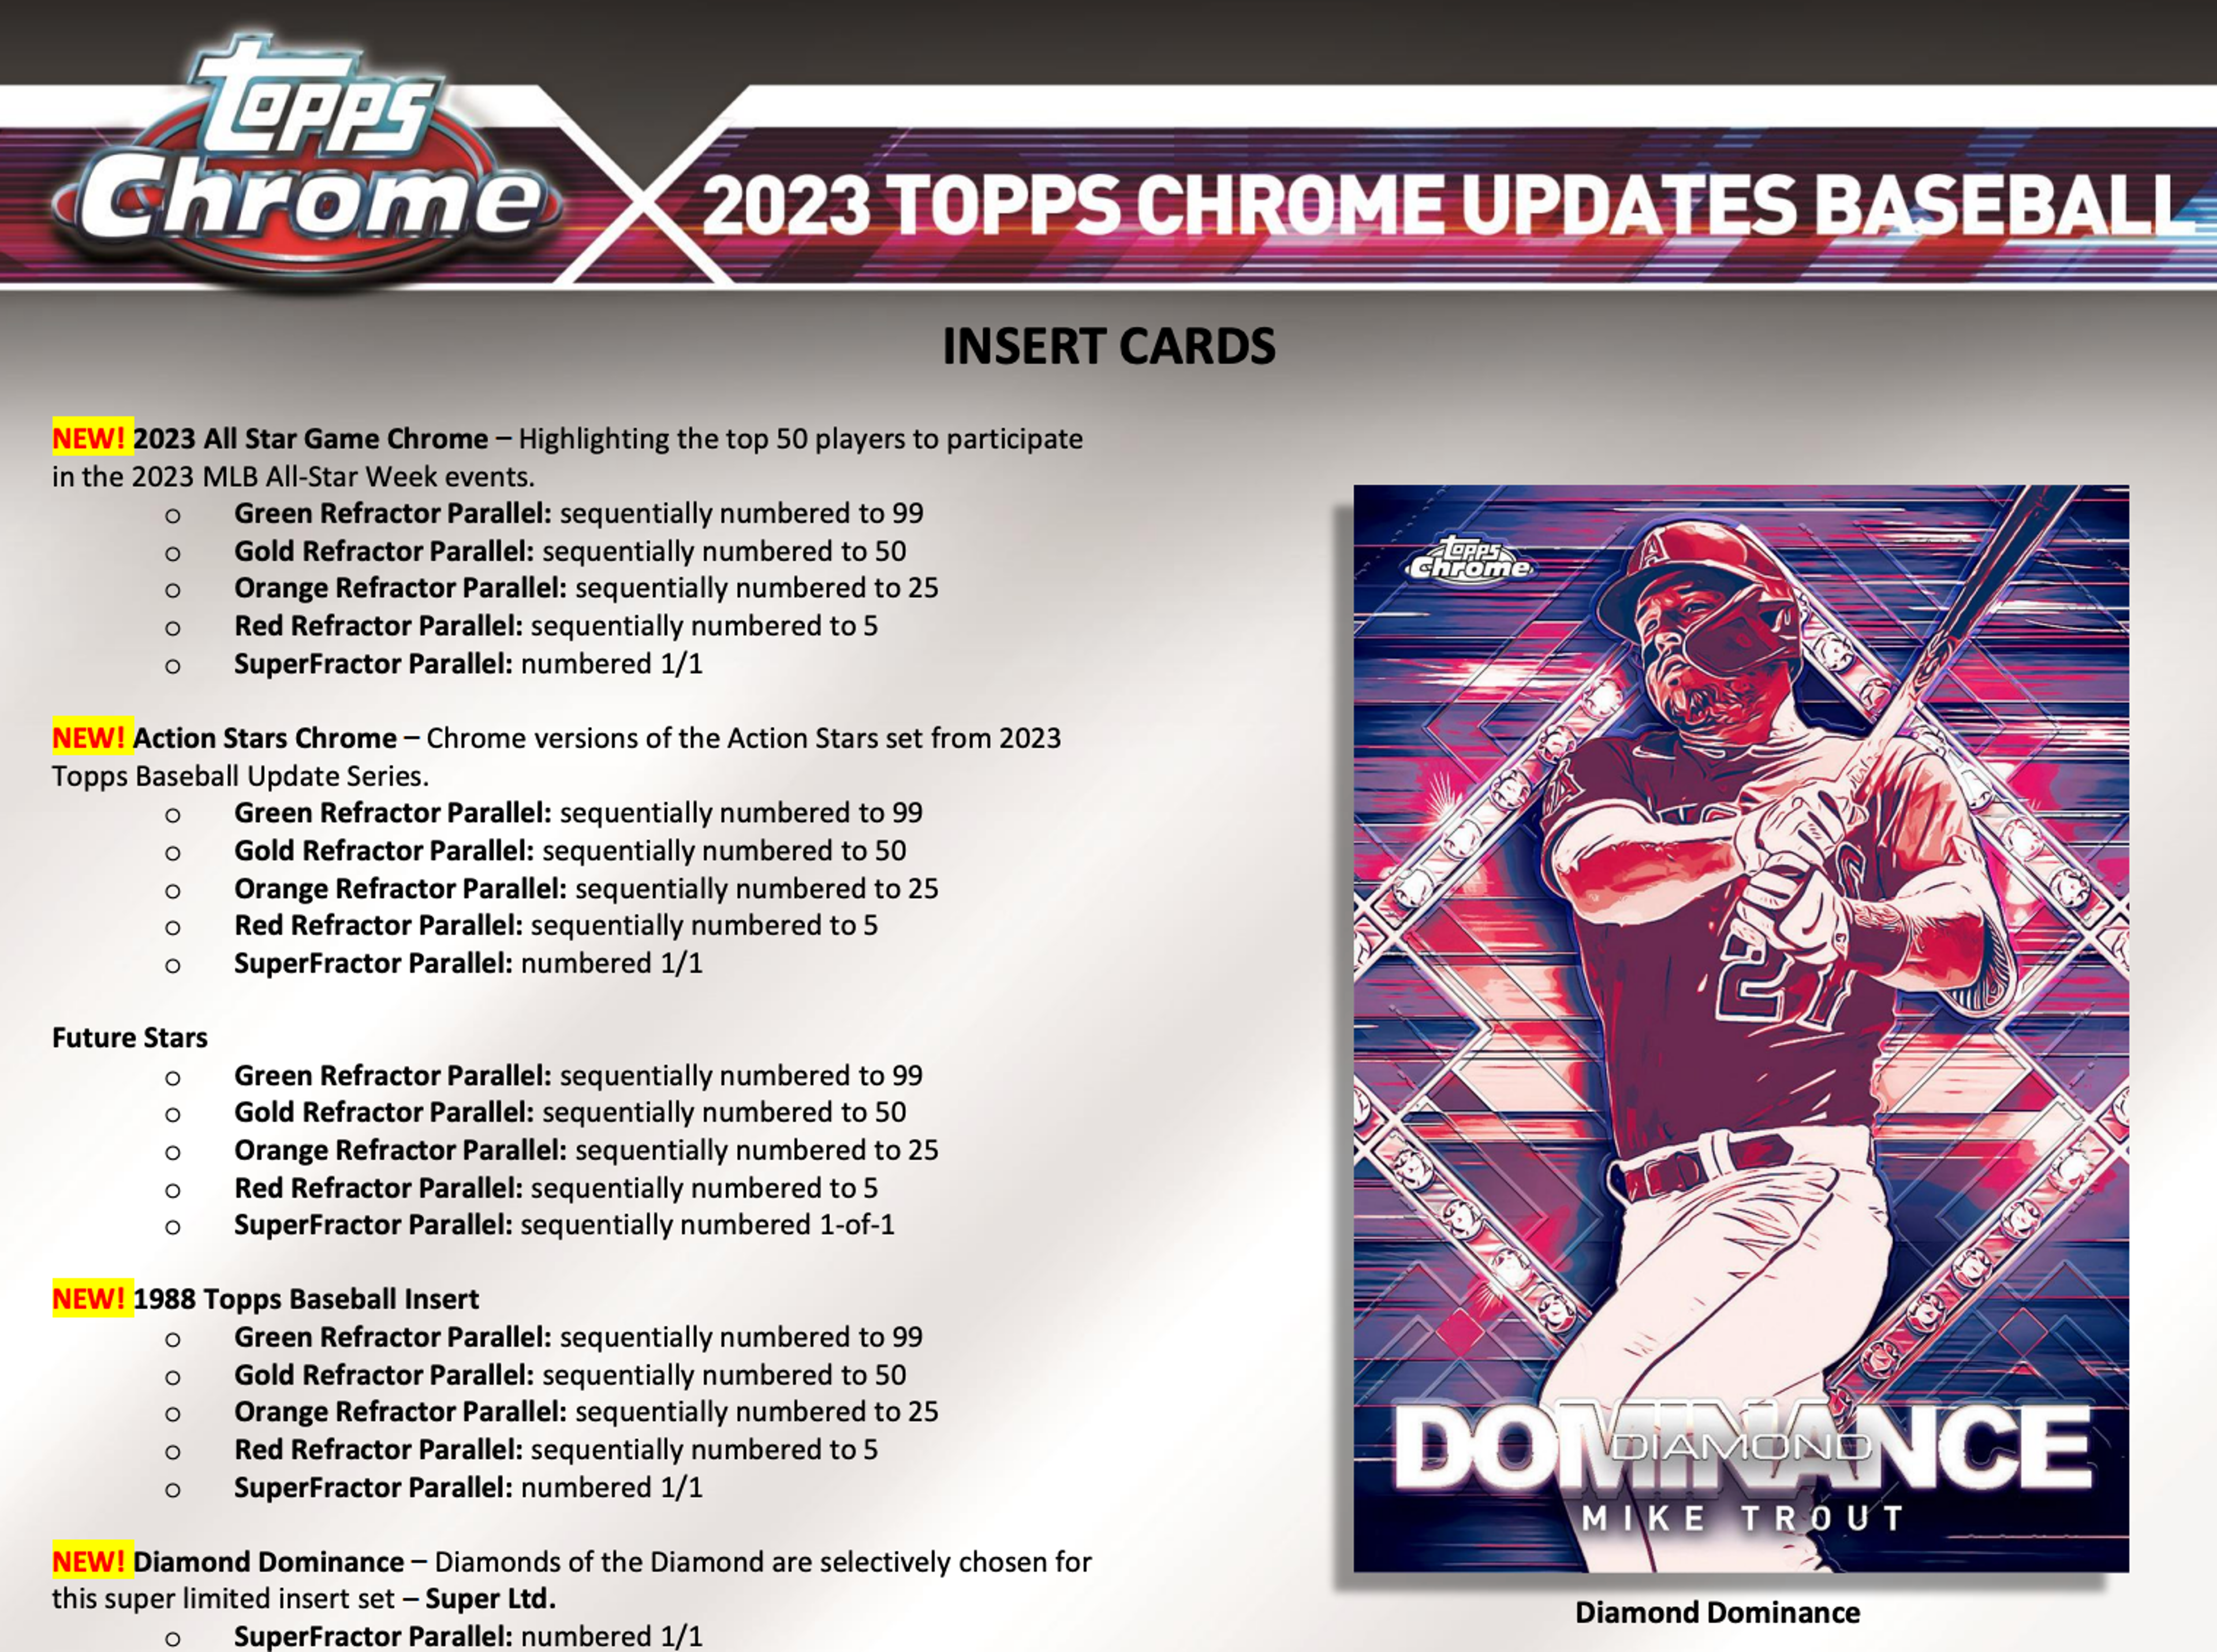 Alternate View 5 of 2023 Topps Chrome Update Series Baseball Breaker's Delight Box